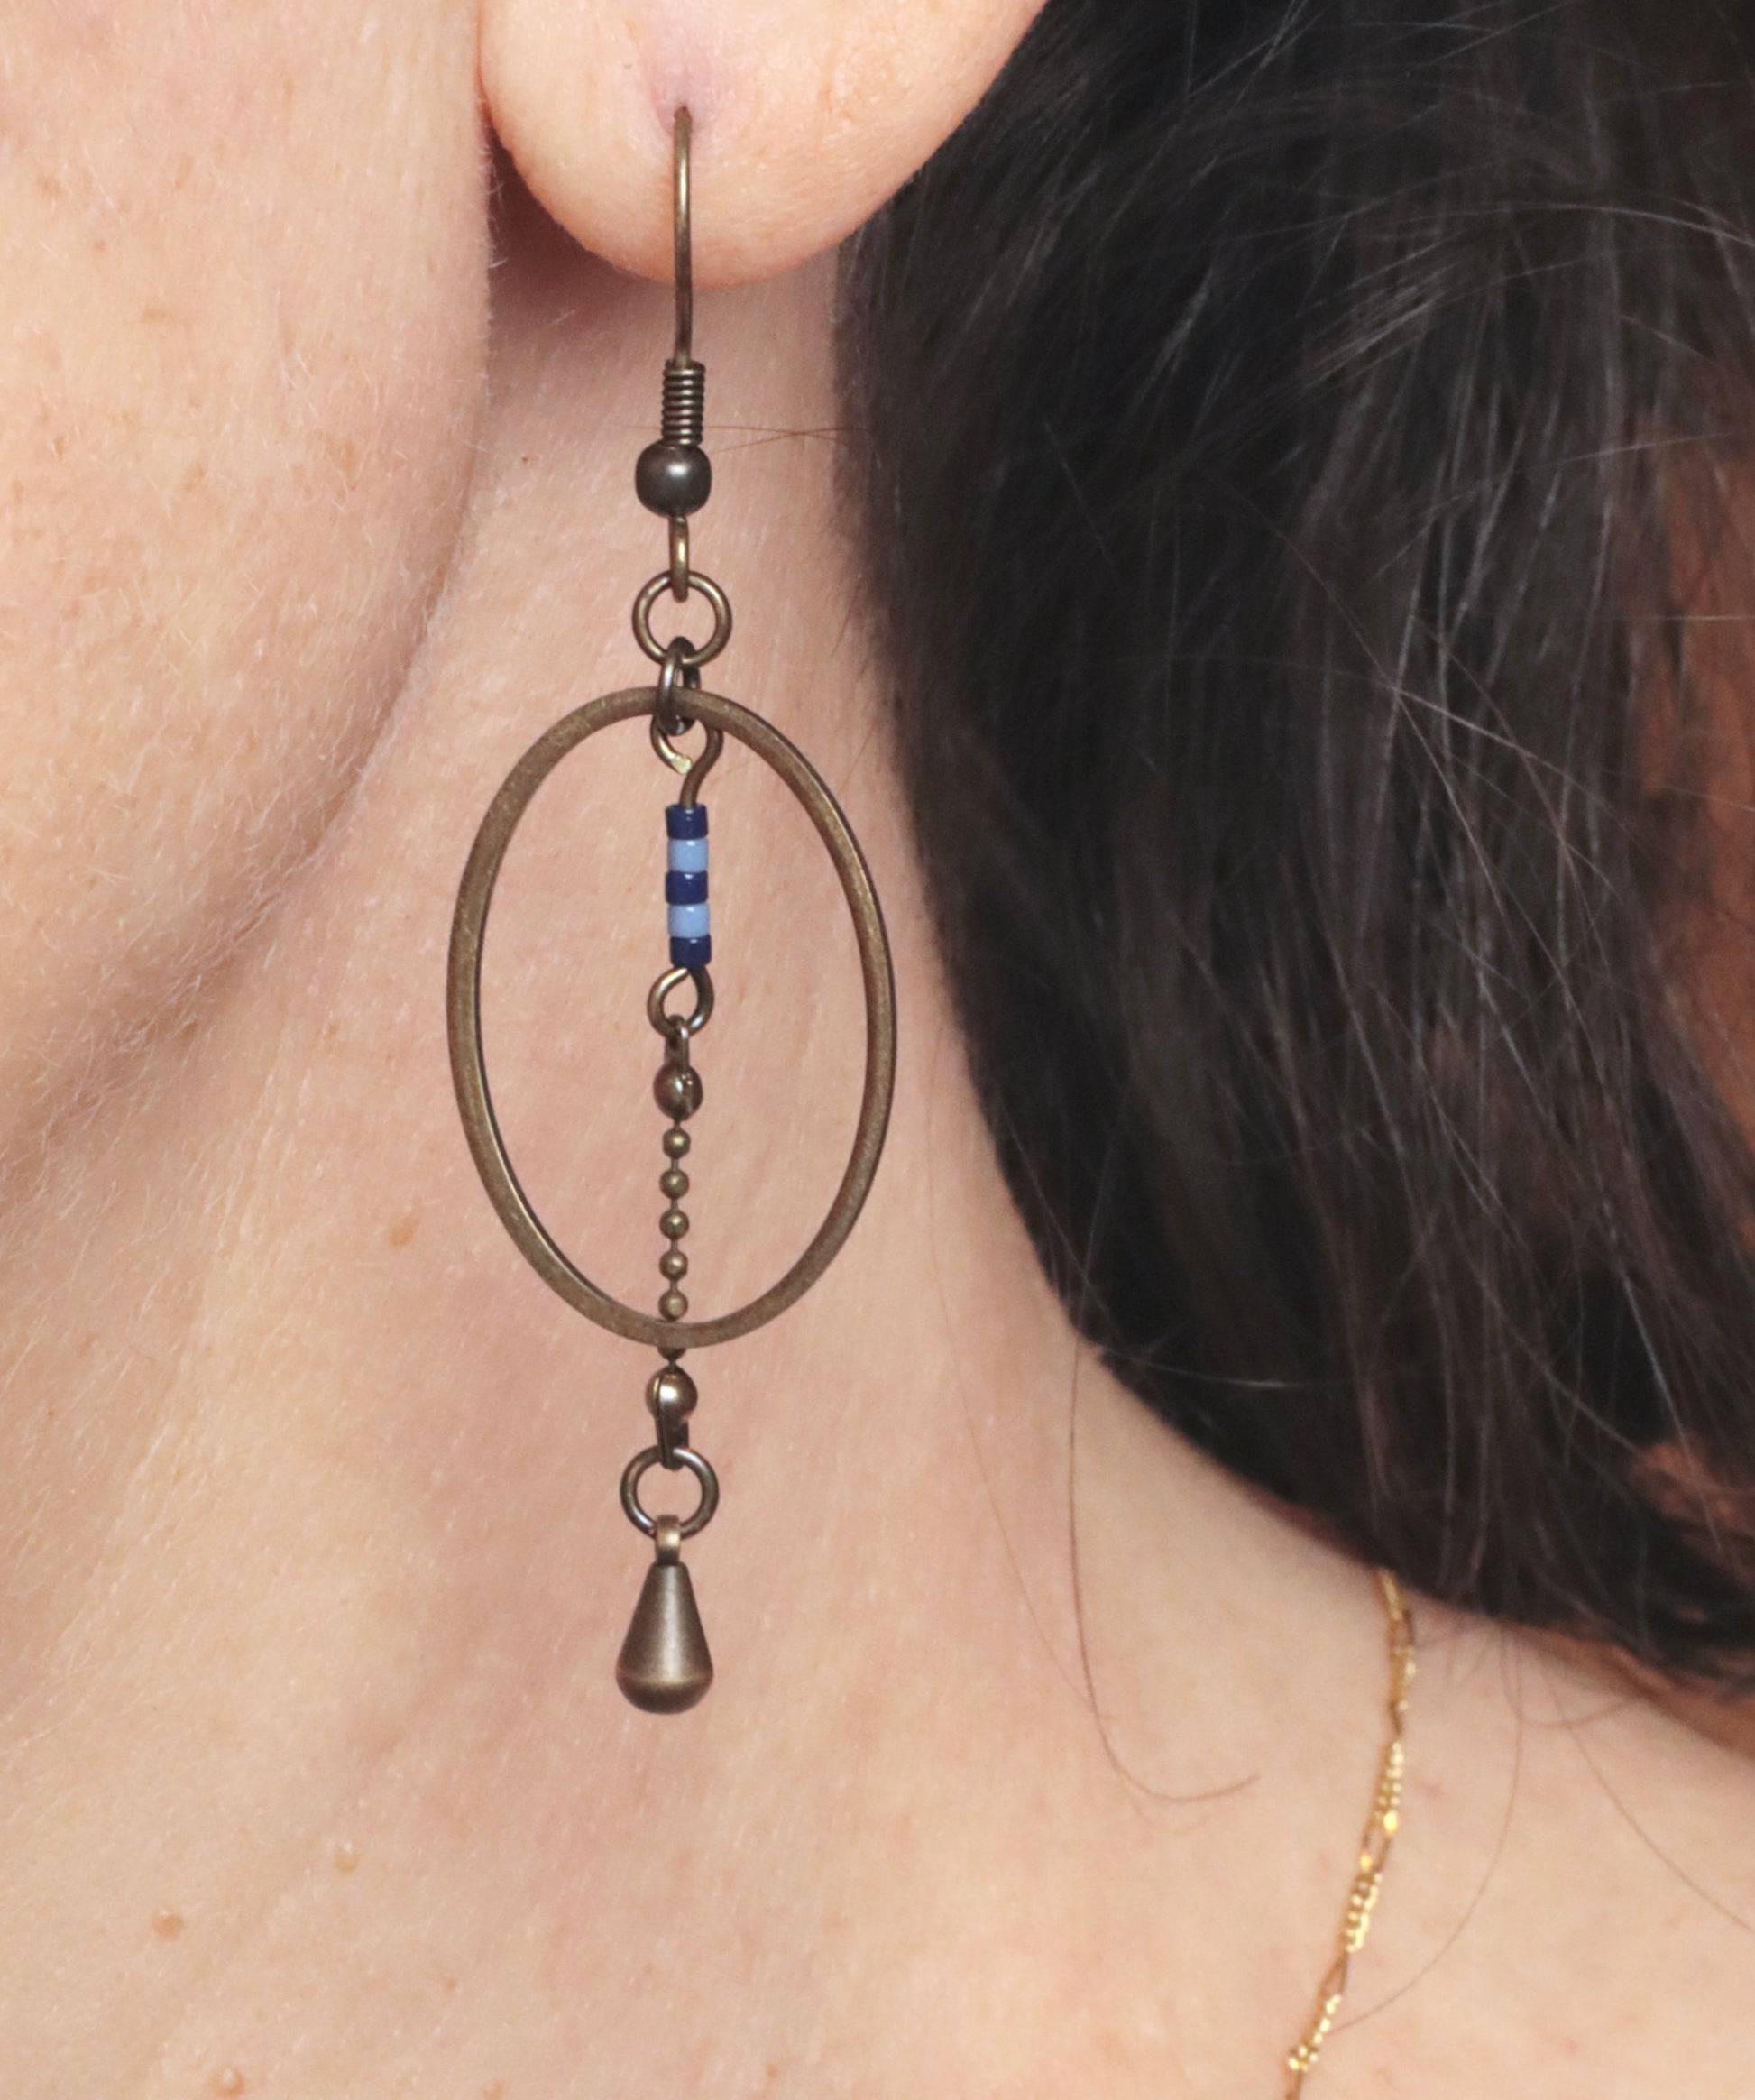 Gros plan des boucles d'oreilles pendantes, modèle Alana, portées à l'oreille